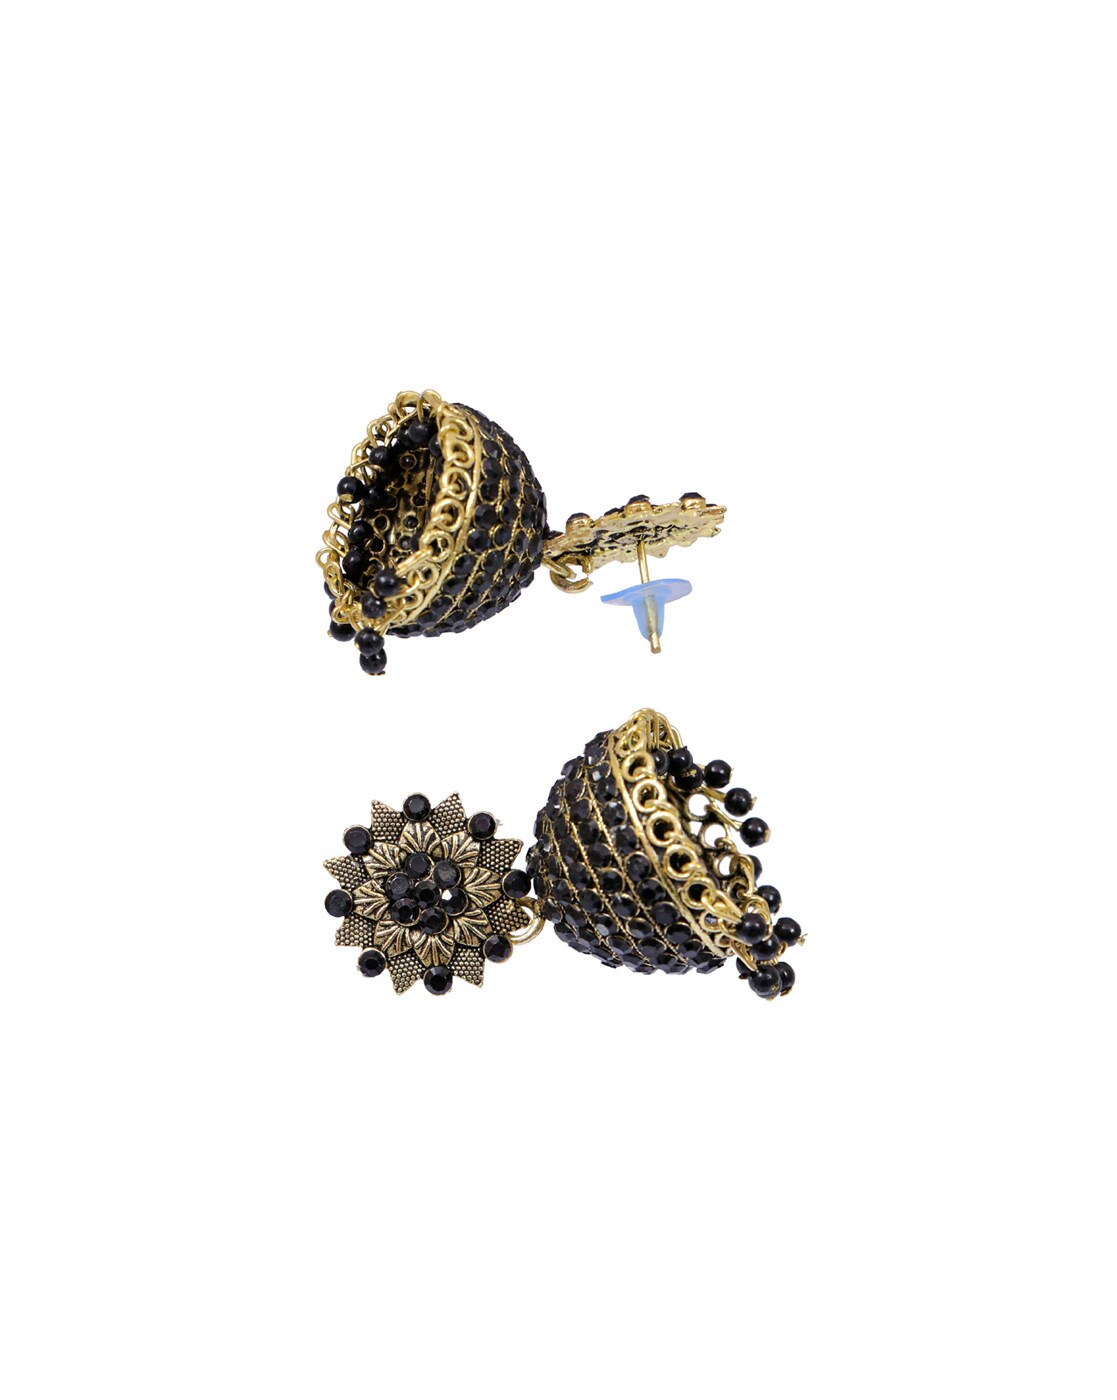 Wholesale Crystal Butterfly Heart Black Earrings Drop Dangle Women Jewelry  Gifts | eBay